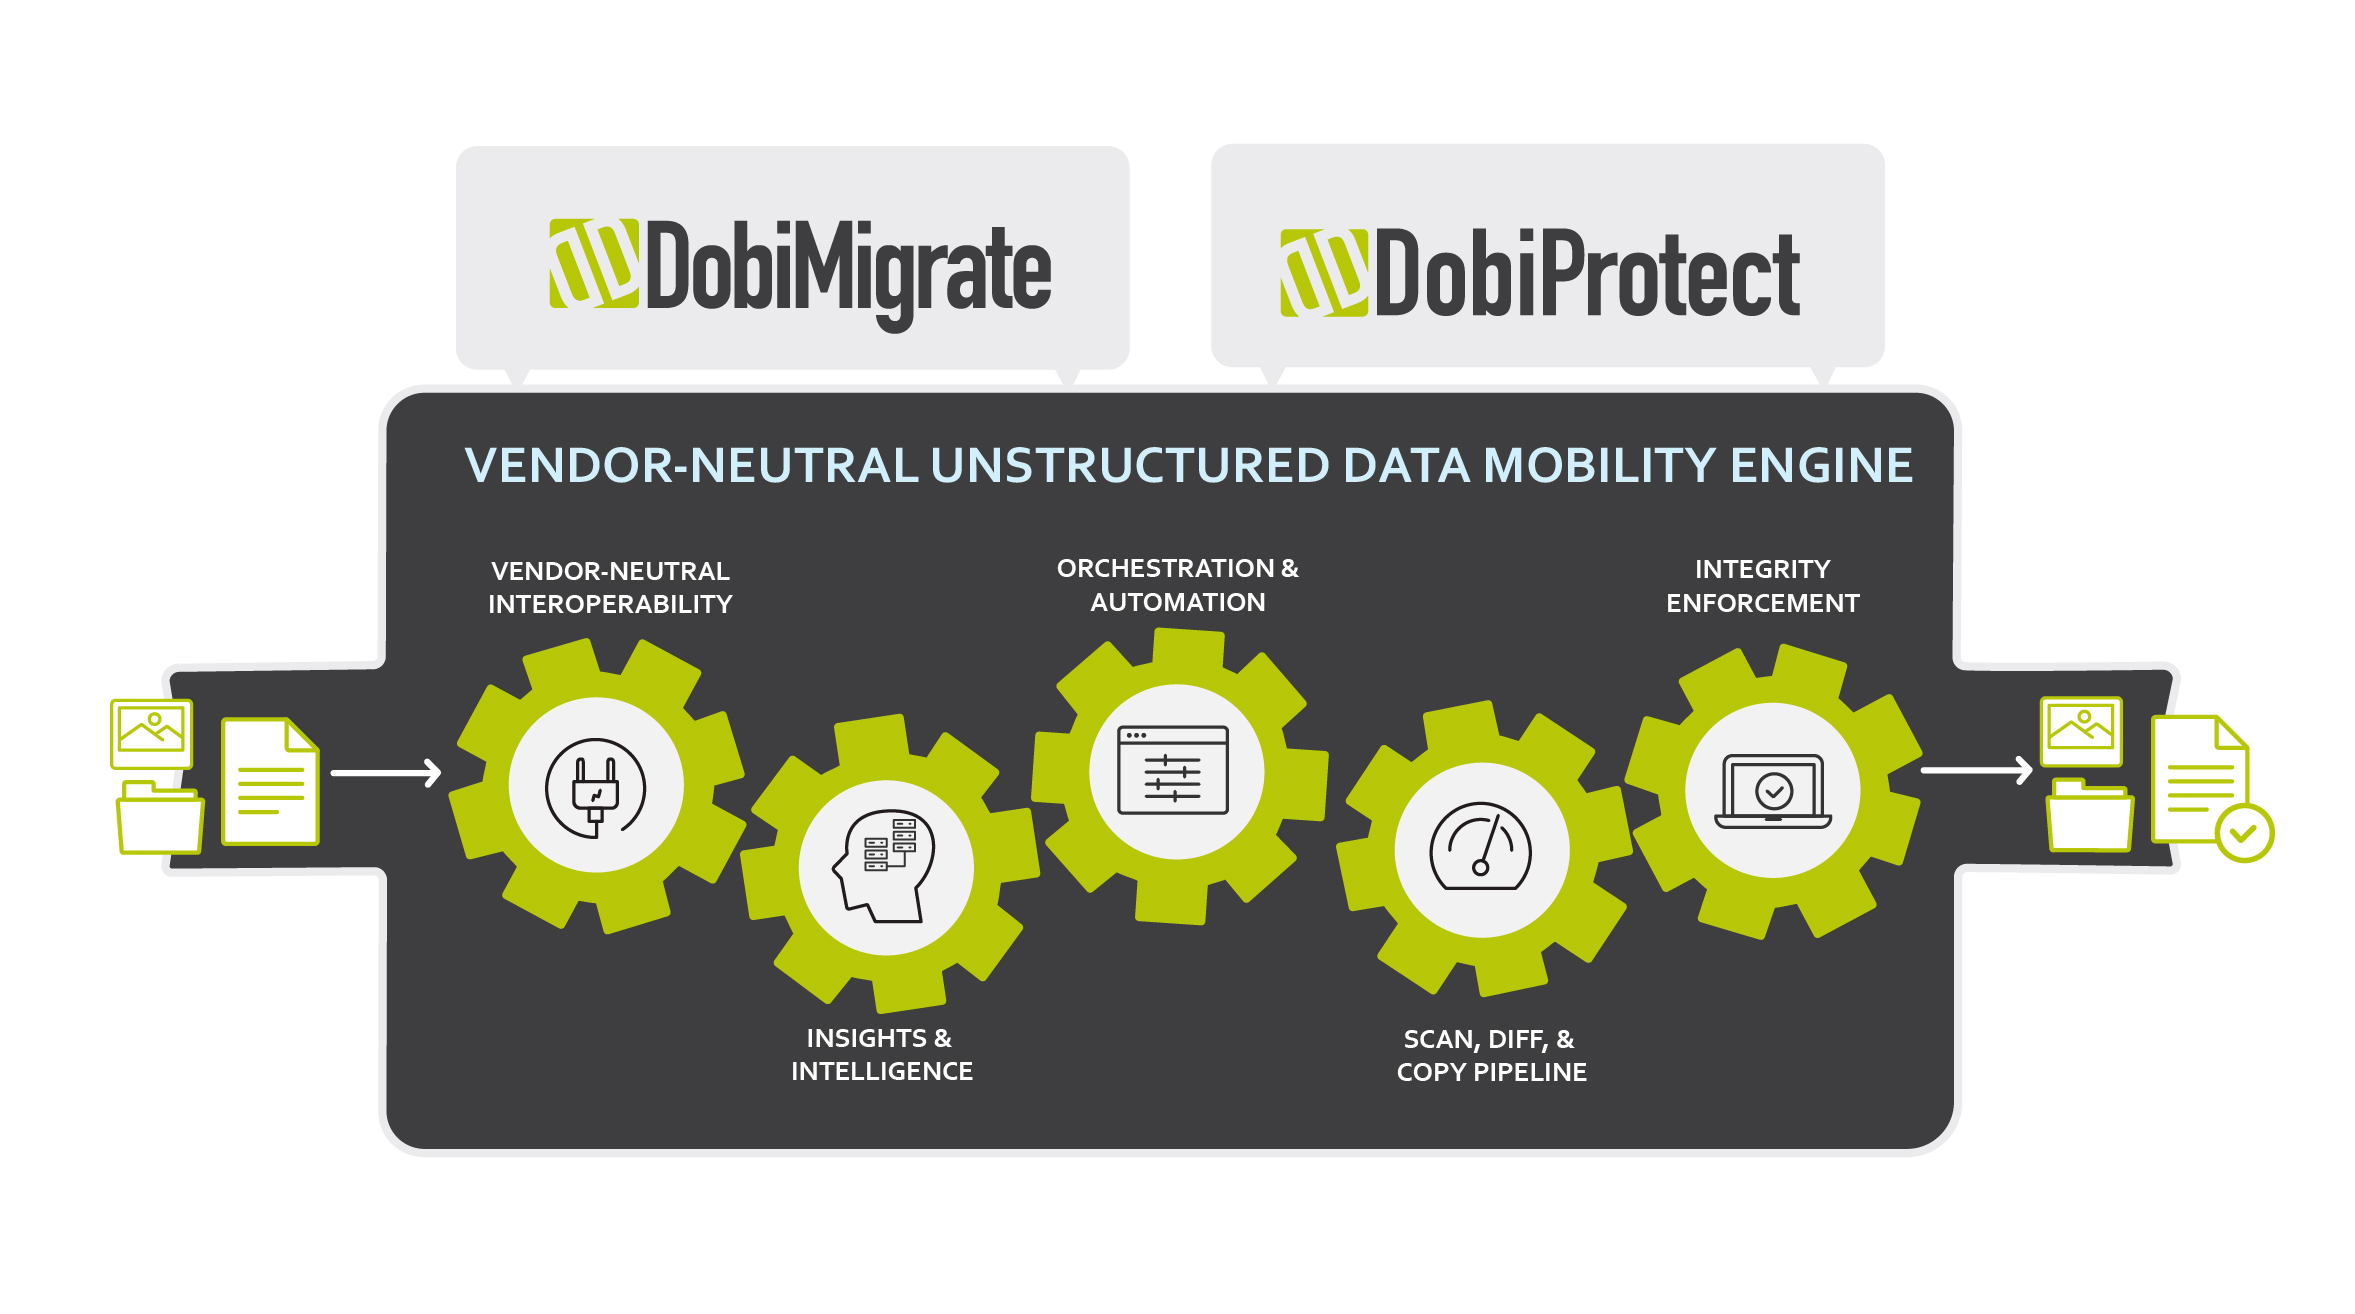 Datadobi’s vendor neutral unstructured data mobility engine